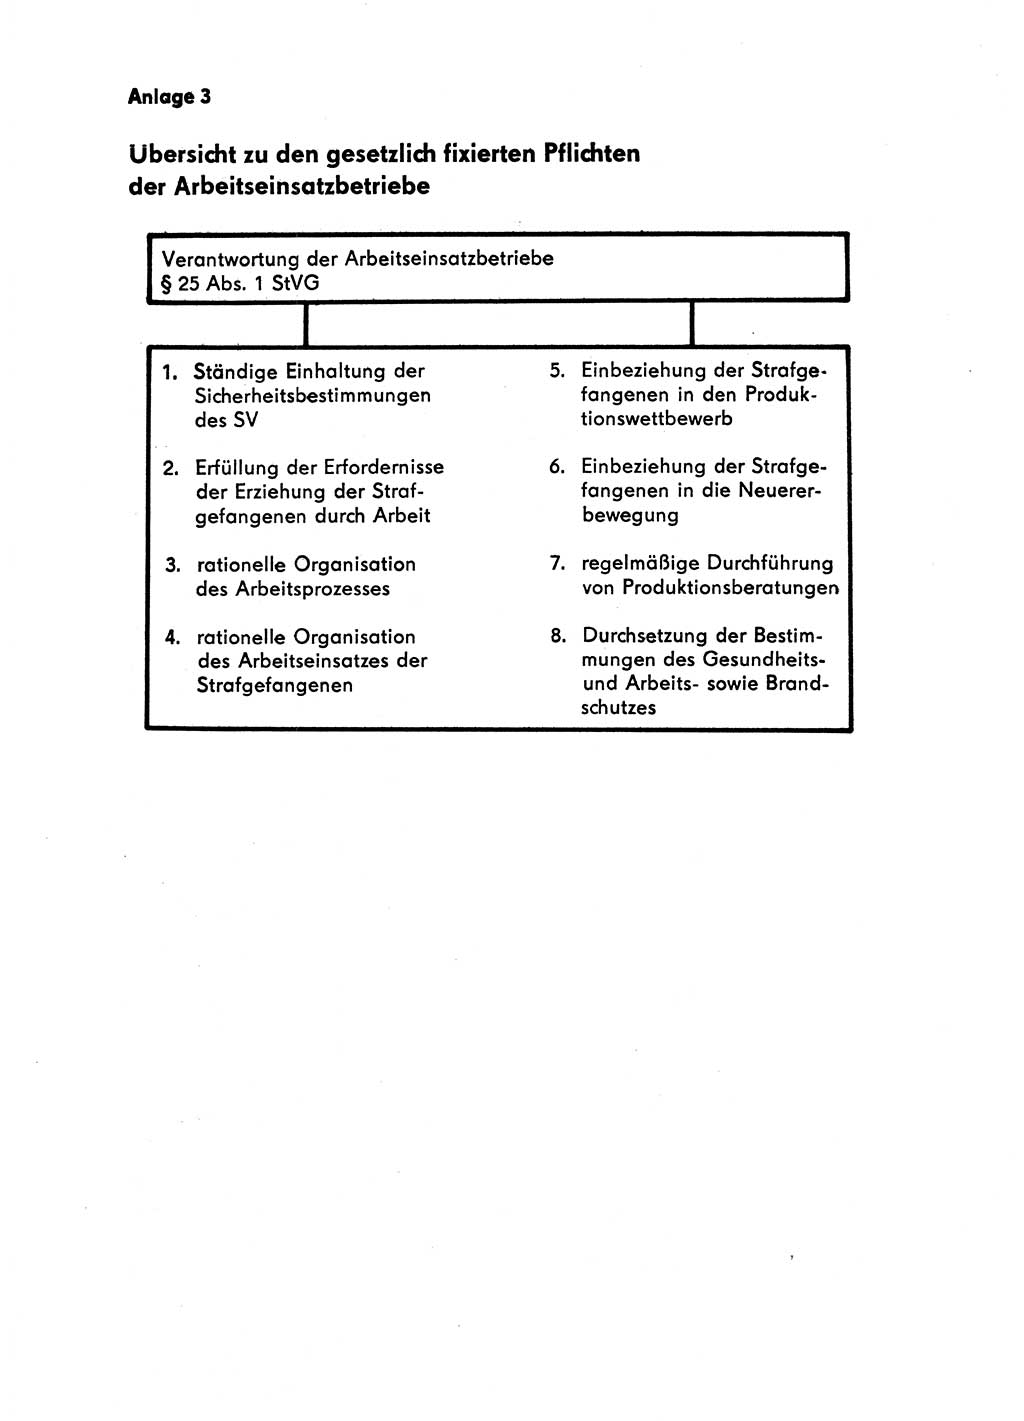 Handbuch für Betriebsangehörige, Abteilung Strafvollzug (SV) [Ministerium des Innern (MdI) Deutsche Demokratische Republik (DDR)] 1981, Seite 155 (Hb. BA Abt. SV MdI DDR 1981, S. 155)